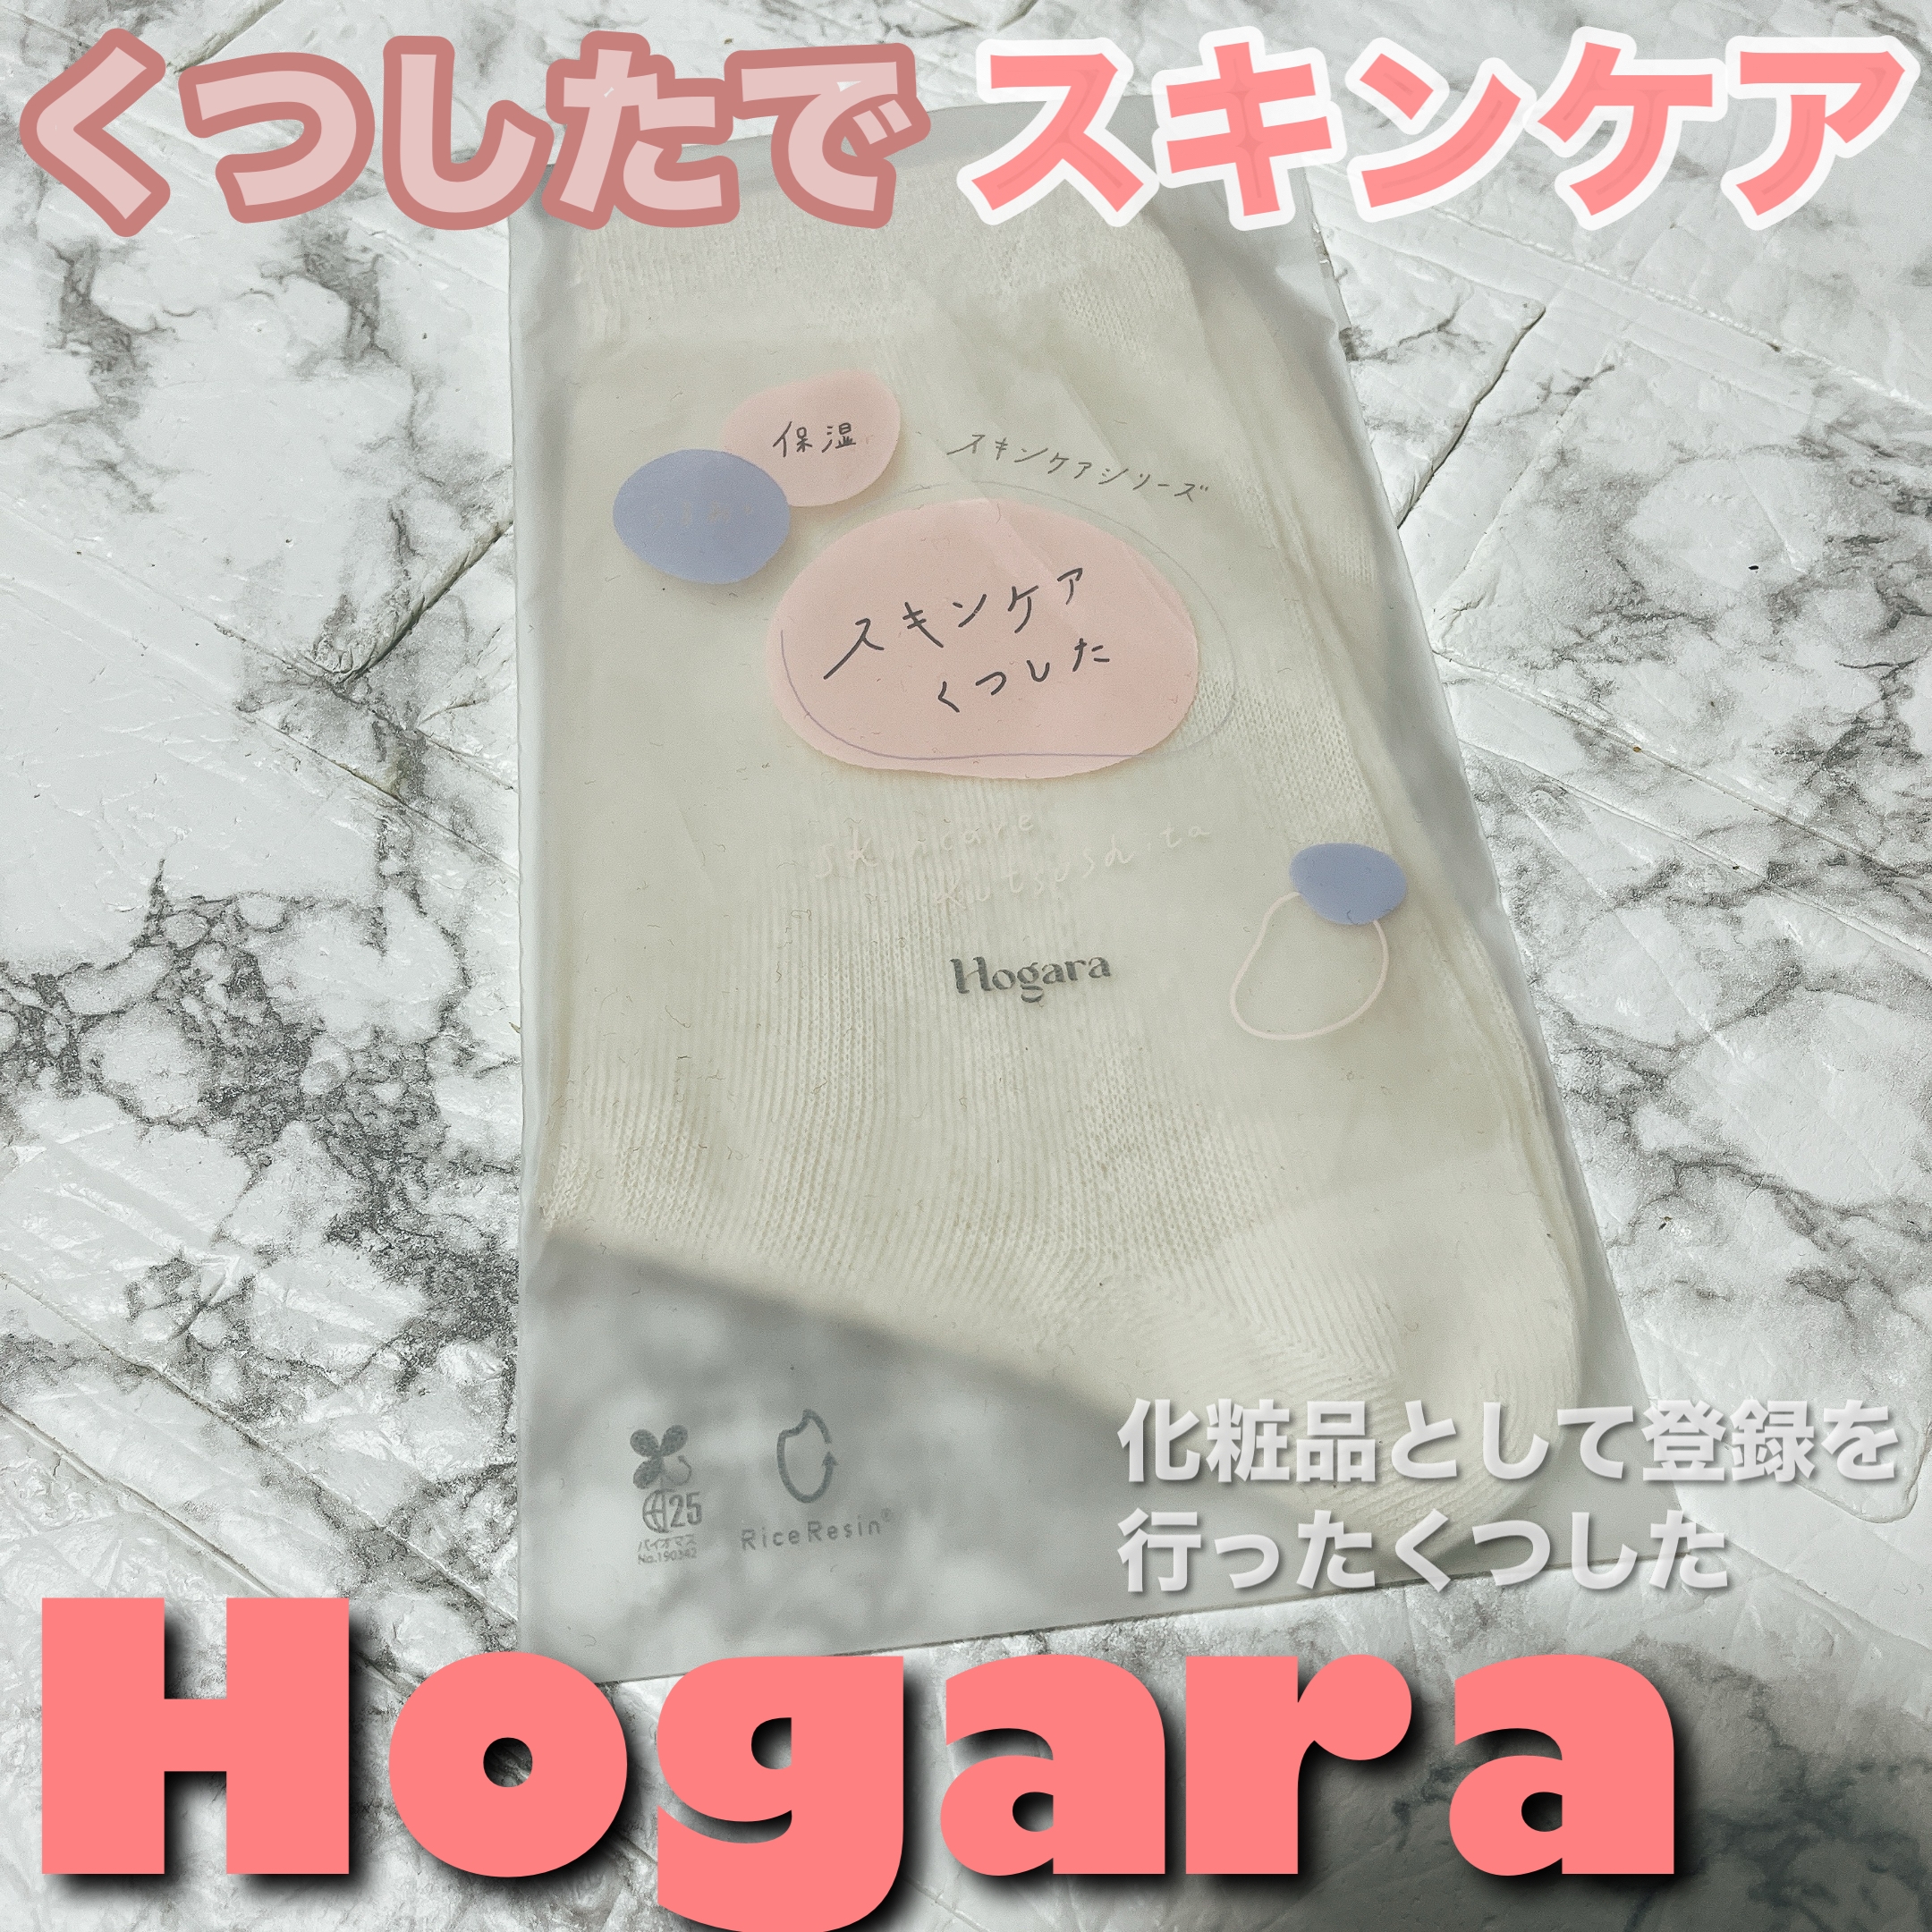 Hogara(ホガラ) スキンケアくつしたの良い点・メリットに関するちーこすさんの口コミ画像1